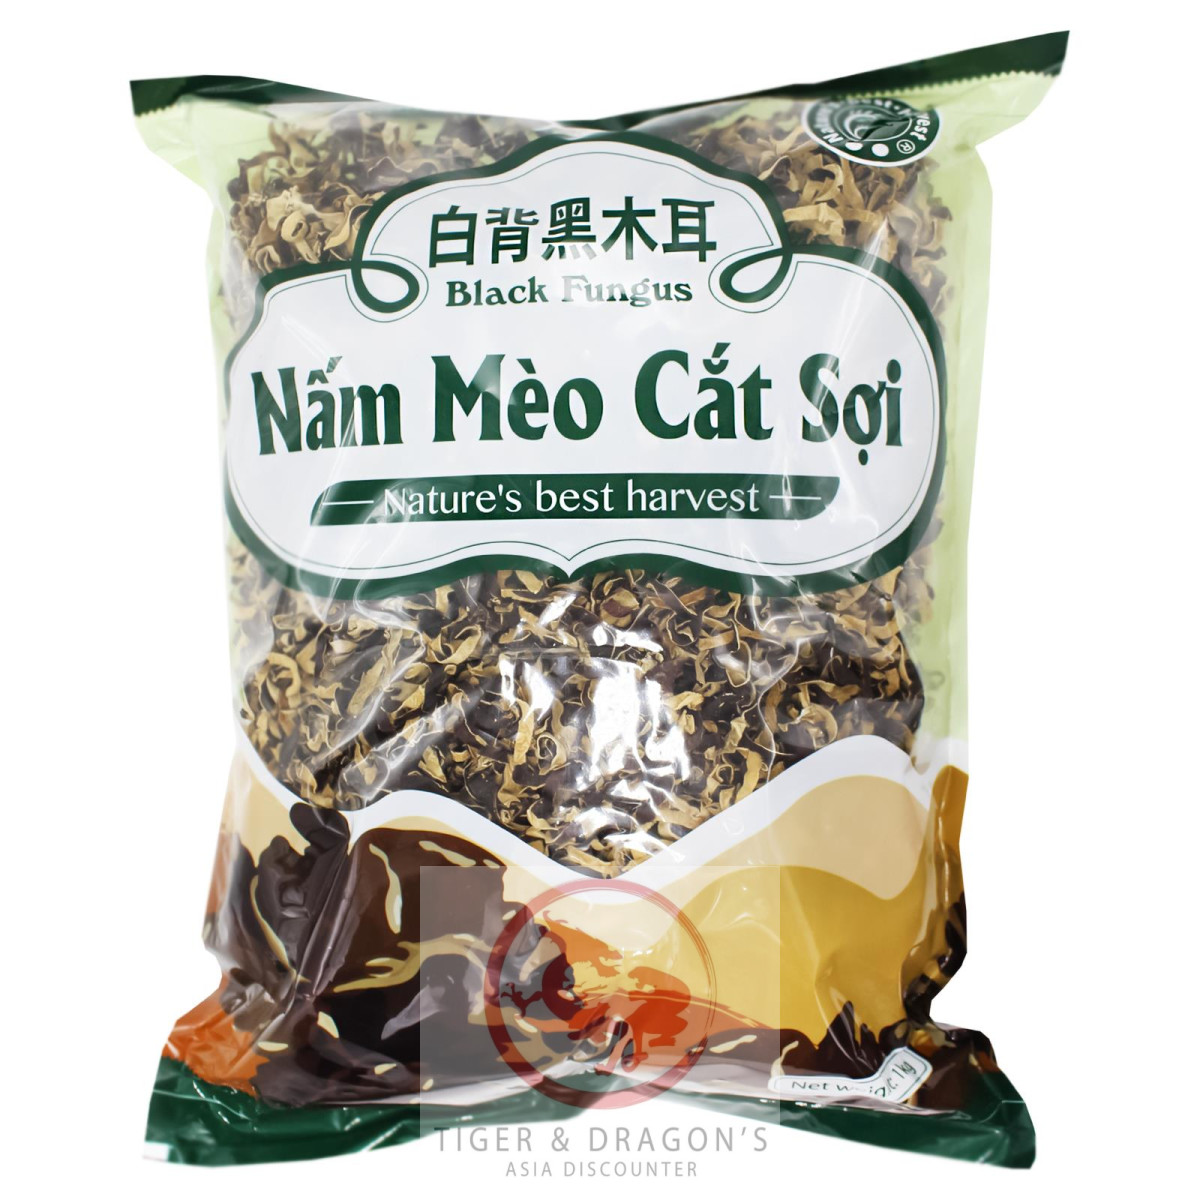 NBH Black Fungus Streifen 1kg Nam Meo Cat Soi